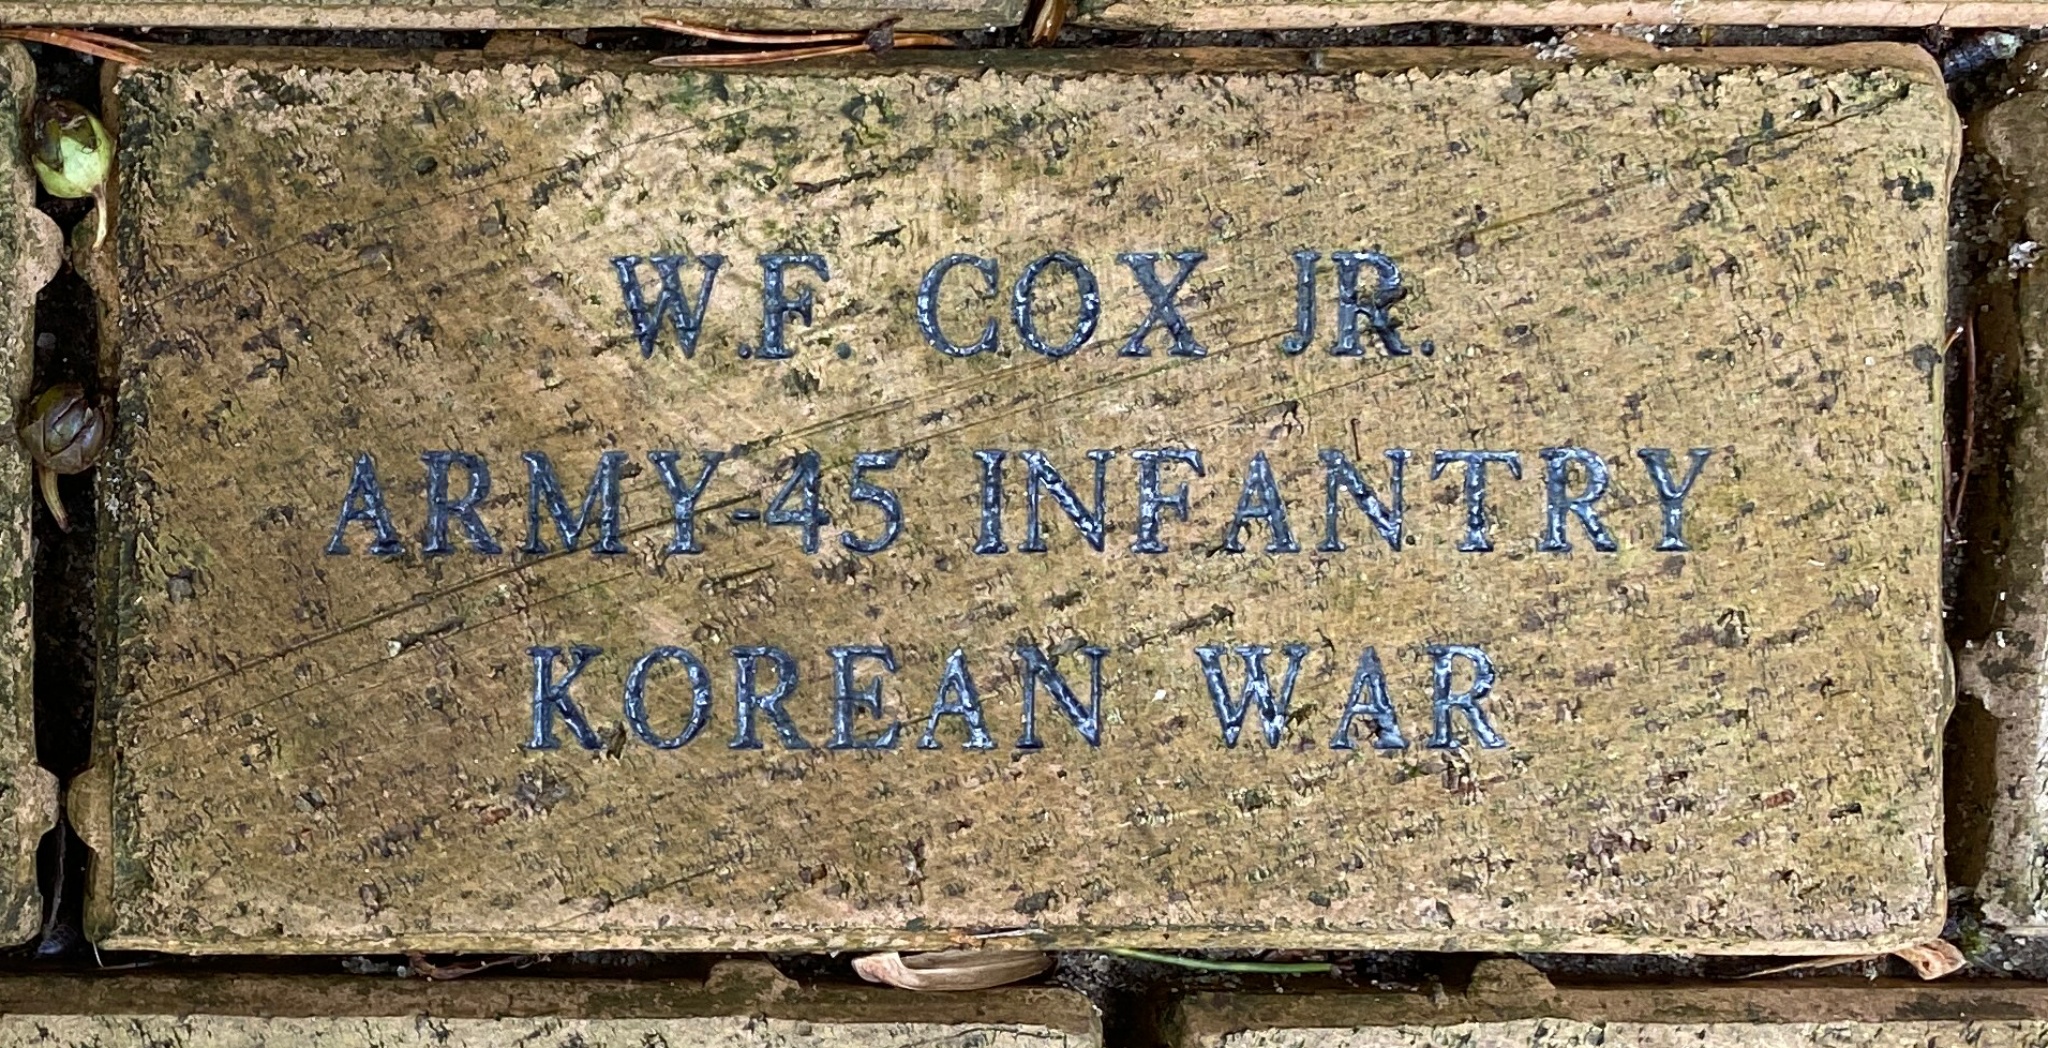 W.F. COX JR ARMY 45 INFANTRY KOREAN WAR